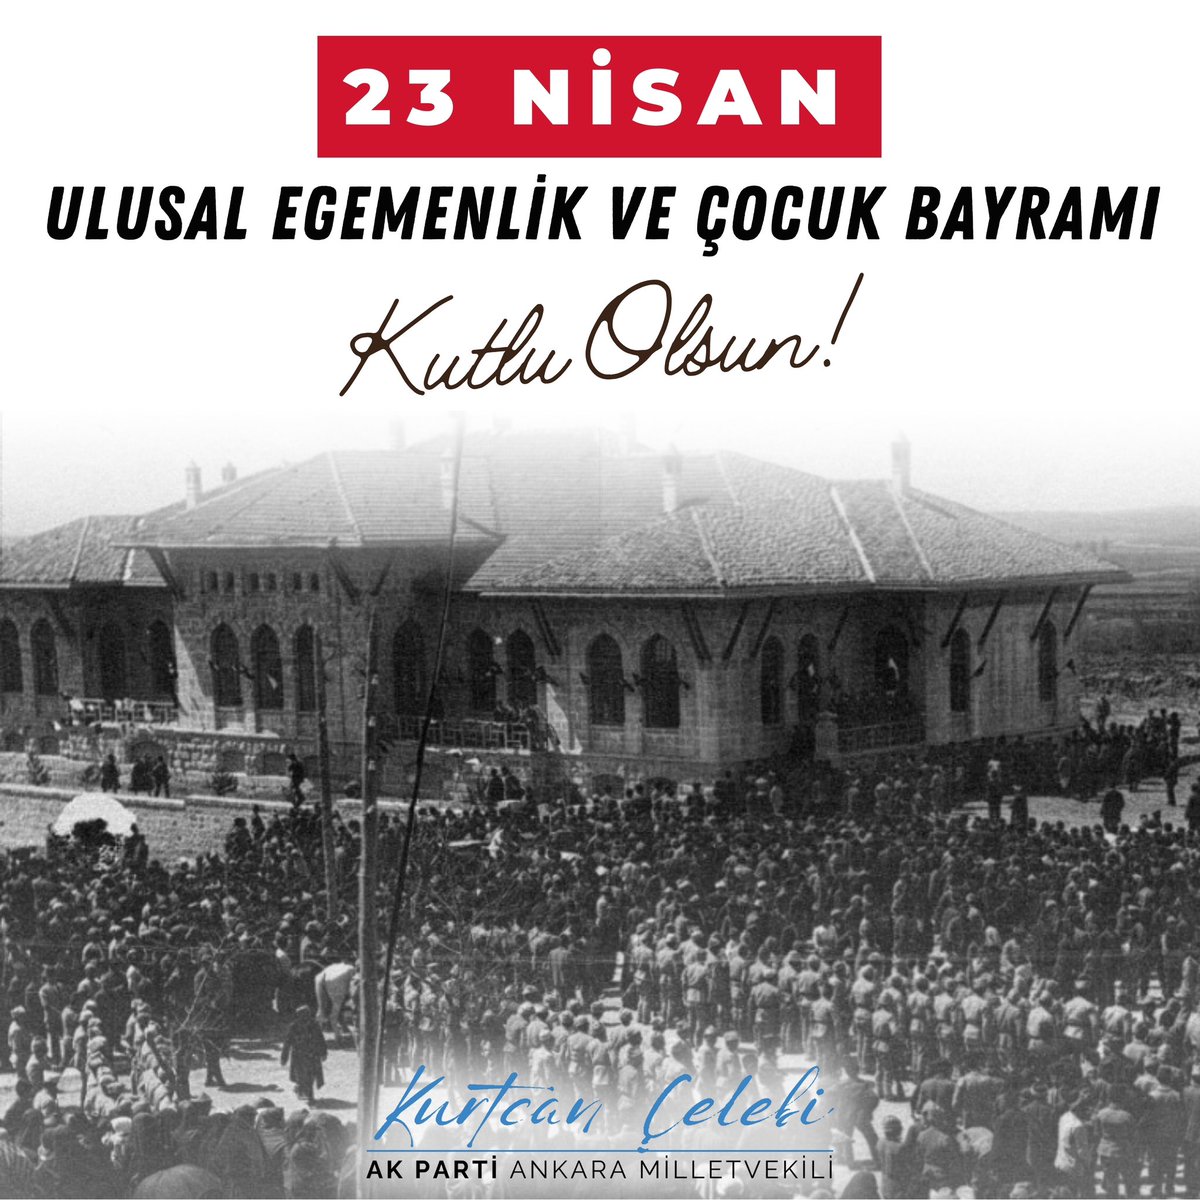 Türkiye Büyük Millet Meclisi’mizin 104. kuruluş yıl dönümünü, çok değerli evlatlarımızın #23Nisan Ulusal Egemenlik ve Çocuk Bayramı’nı en samimi duygularımla kutlarım. Büyük Millet Meclisimizin ilk Başkanı Gazi Mustafa Kemal Atatürk başta olmak üzere ülkemizin bugünlere…